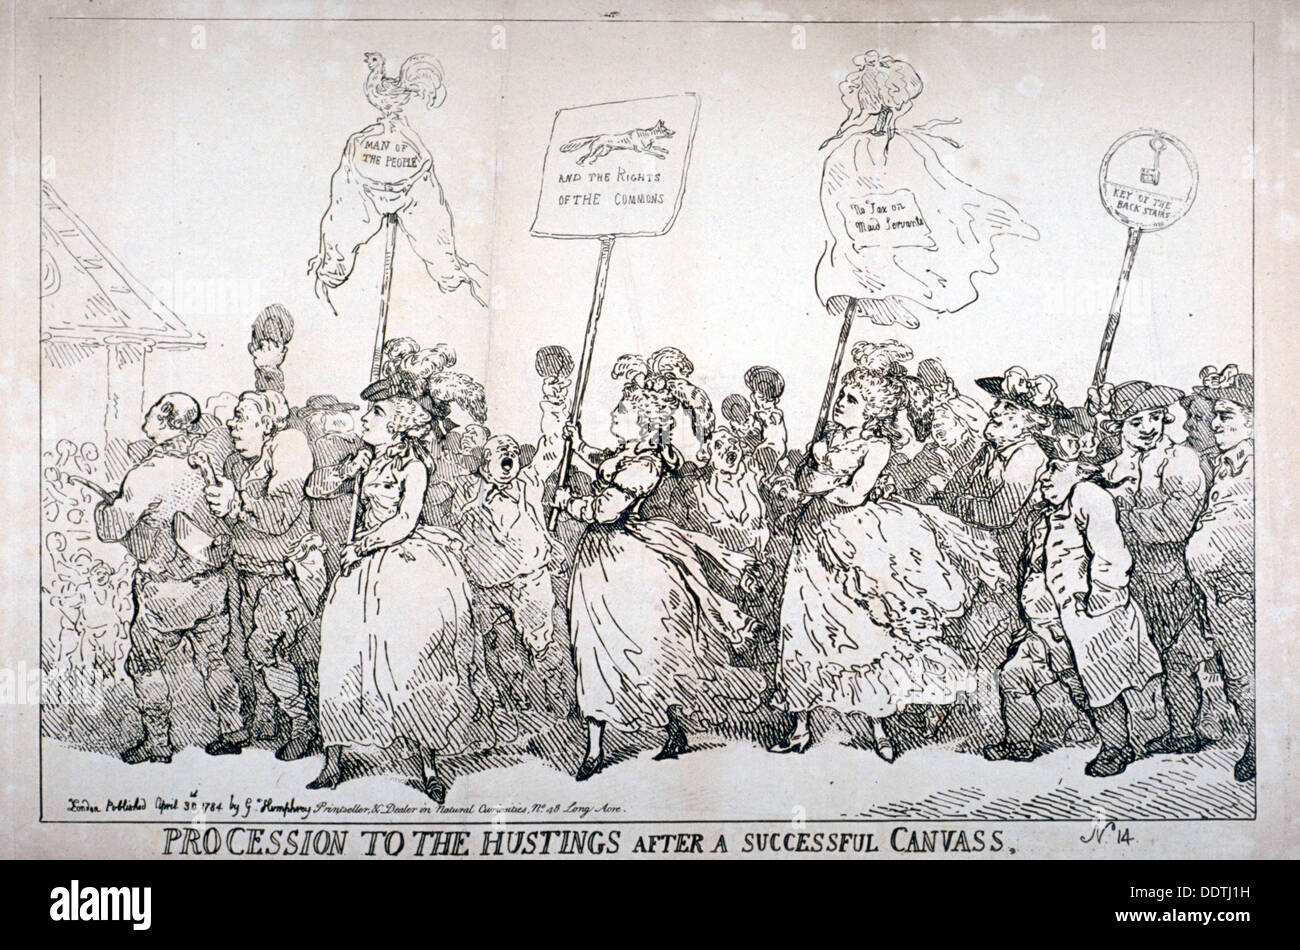 "Processione al hustings dopo il successo della tela, no:14', 1784. Artista: Thomas Rowlandson Foto Stock